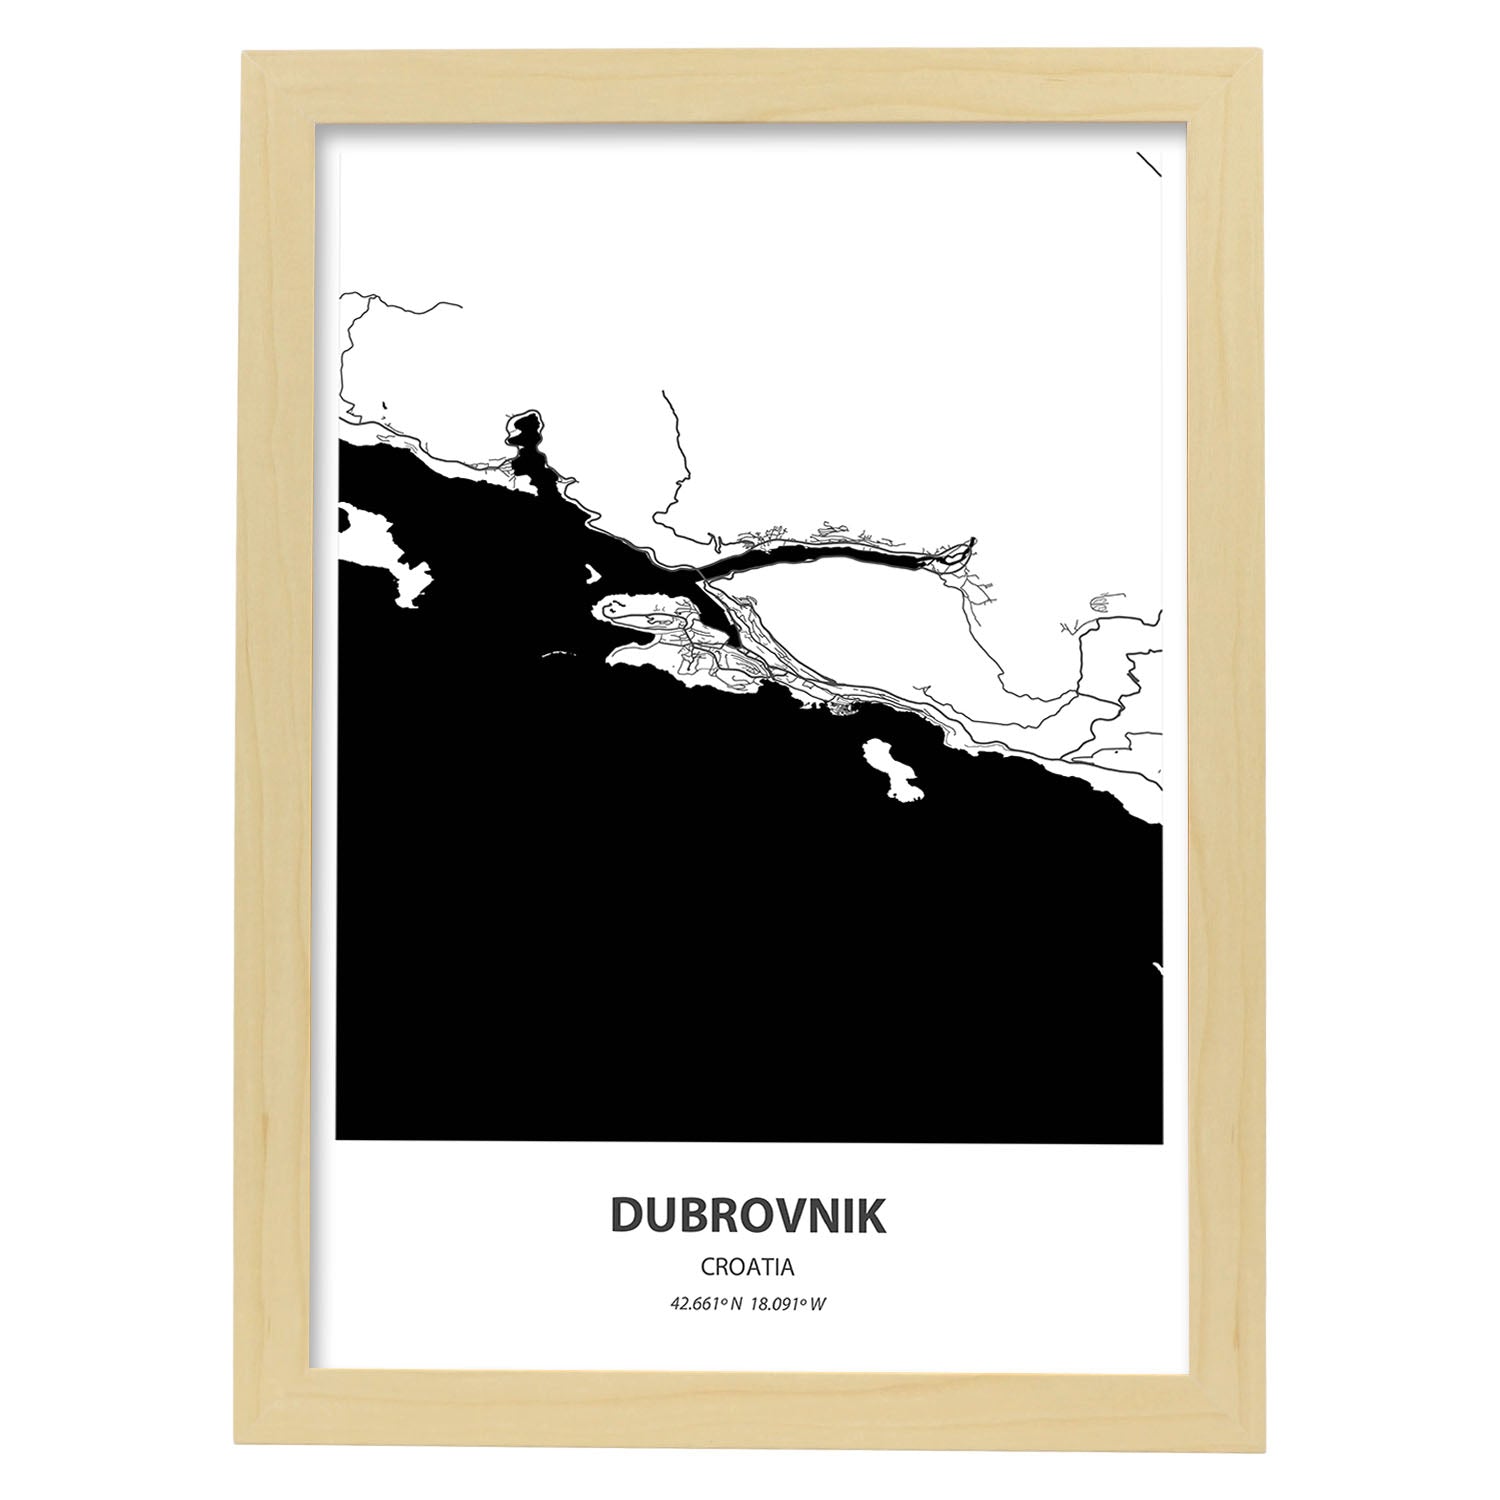 Poster con mapa de Dubrokniv - Croacia. Láminas de ciudades de Europa con mares y ríos en color negro.-Artwork-Nacnic-A4-Marco Madera clara-Nacnic Estudio SL